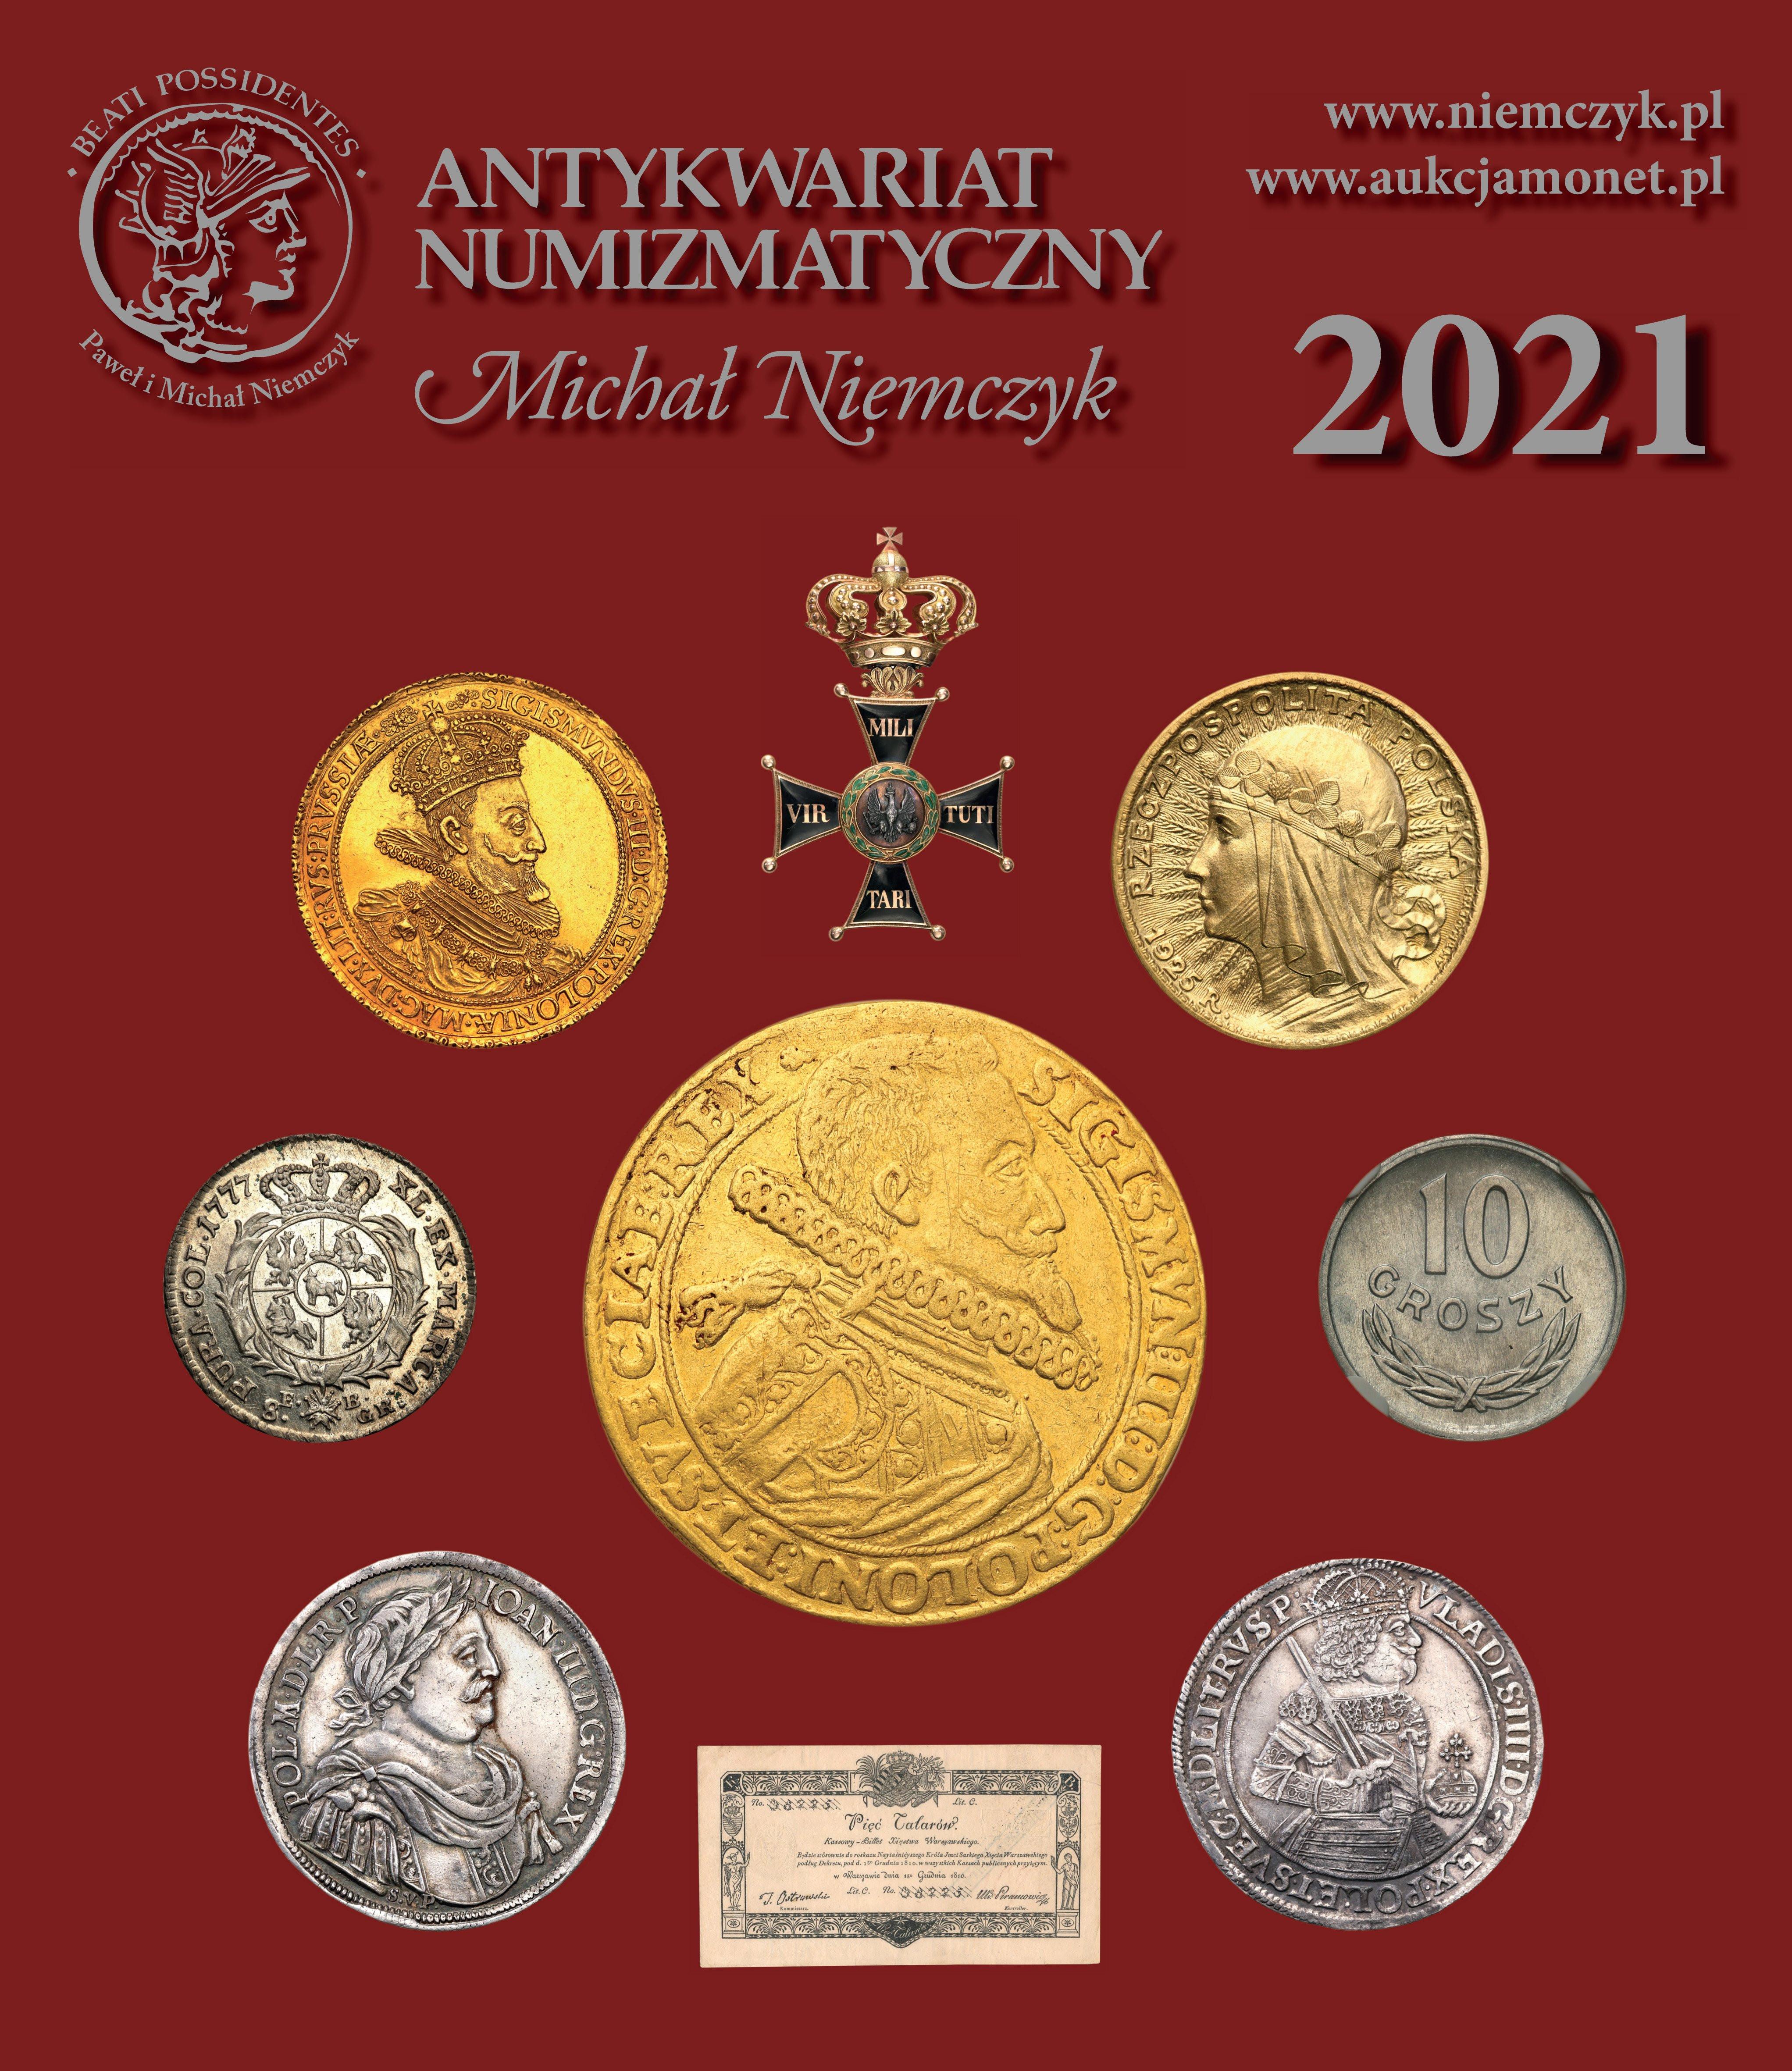 Kalendarz numizmatyczny 2021 NIEMCZYK - limitowana edycja!